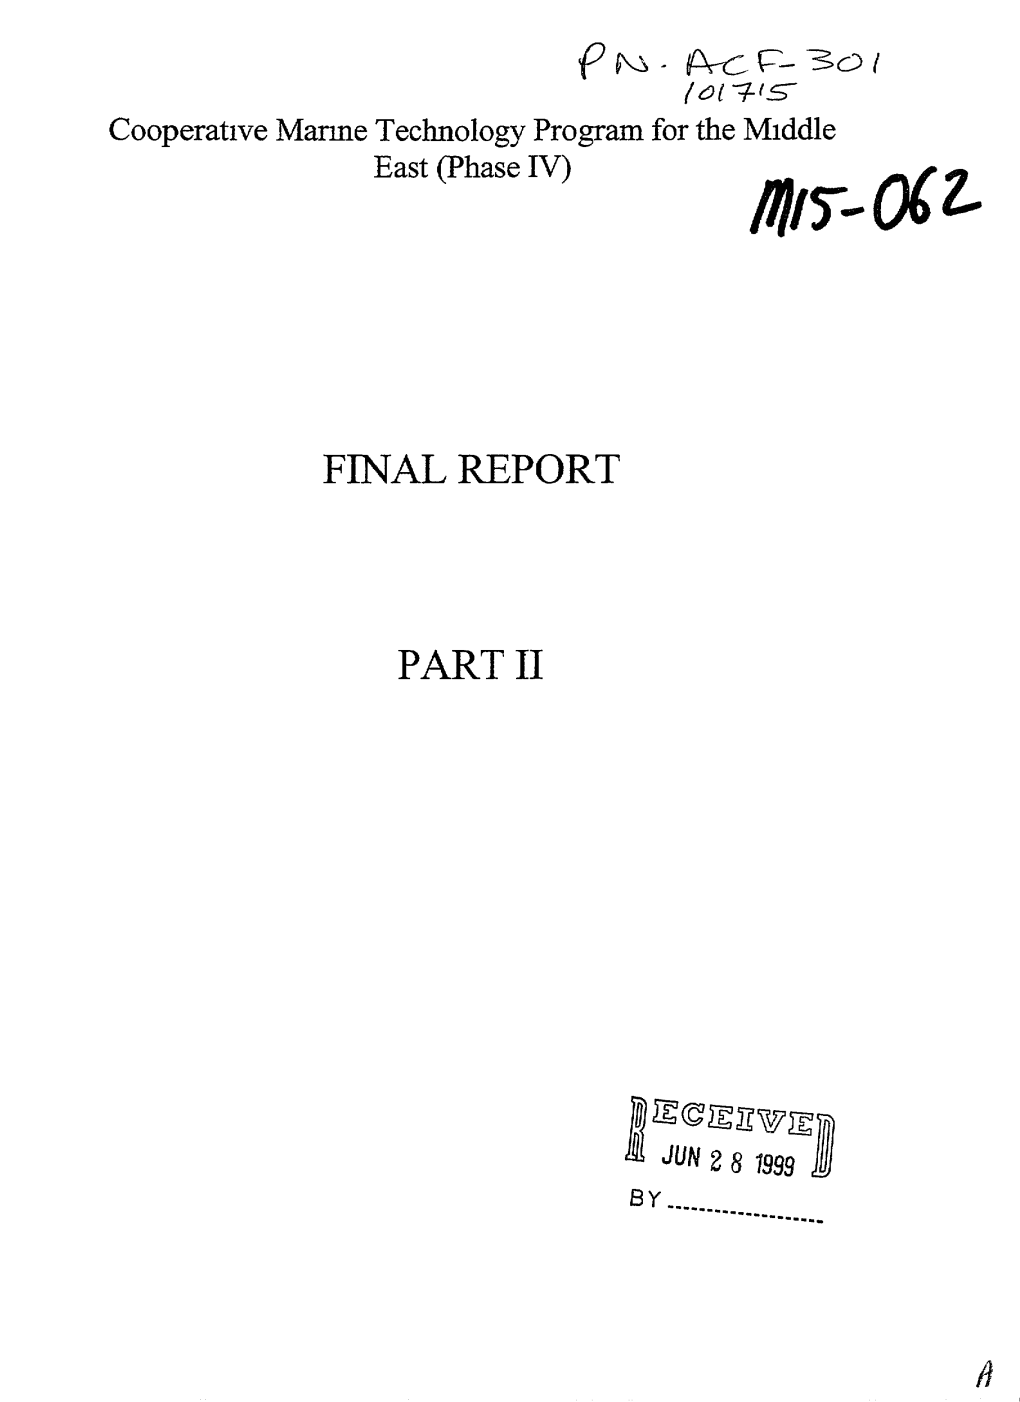 Final Report Part Ii